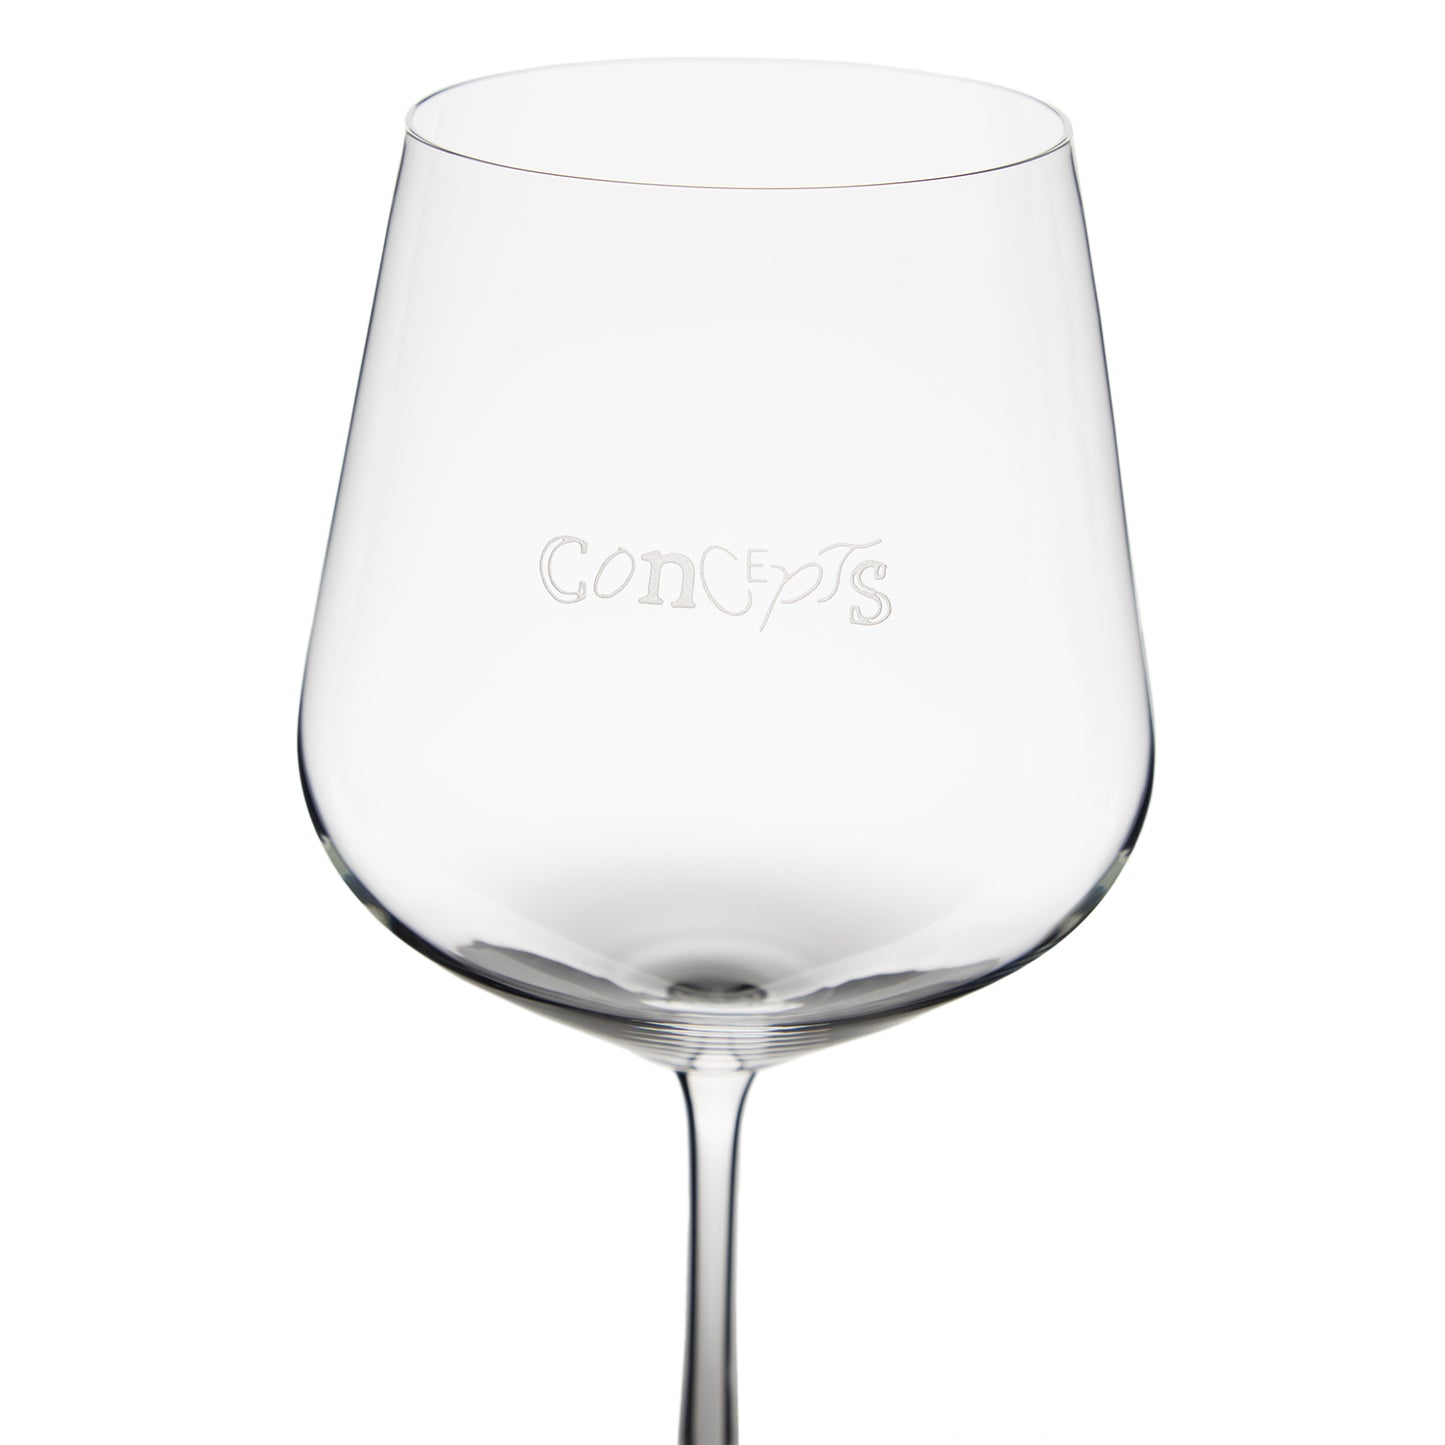 Concepts Script Wine Glass Set